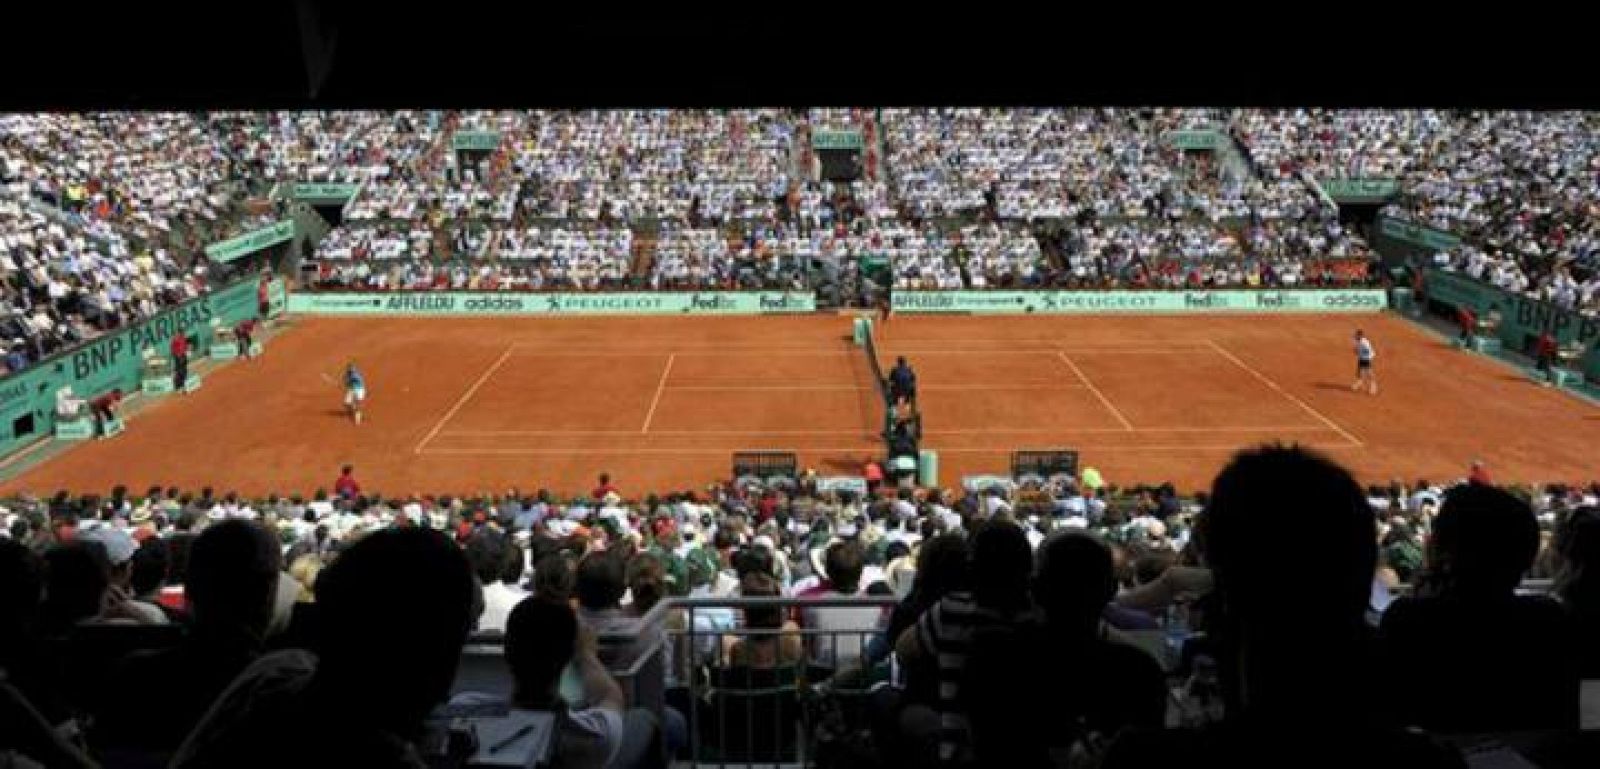 La pista de Roland Garros durante un encuentro ente Nadal y Soderling.